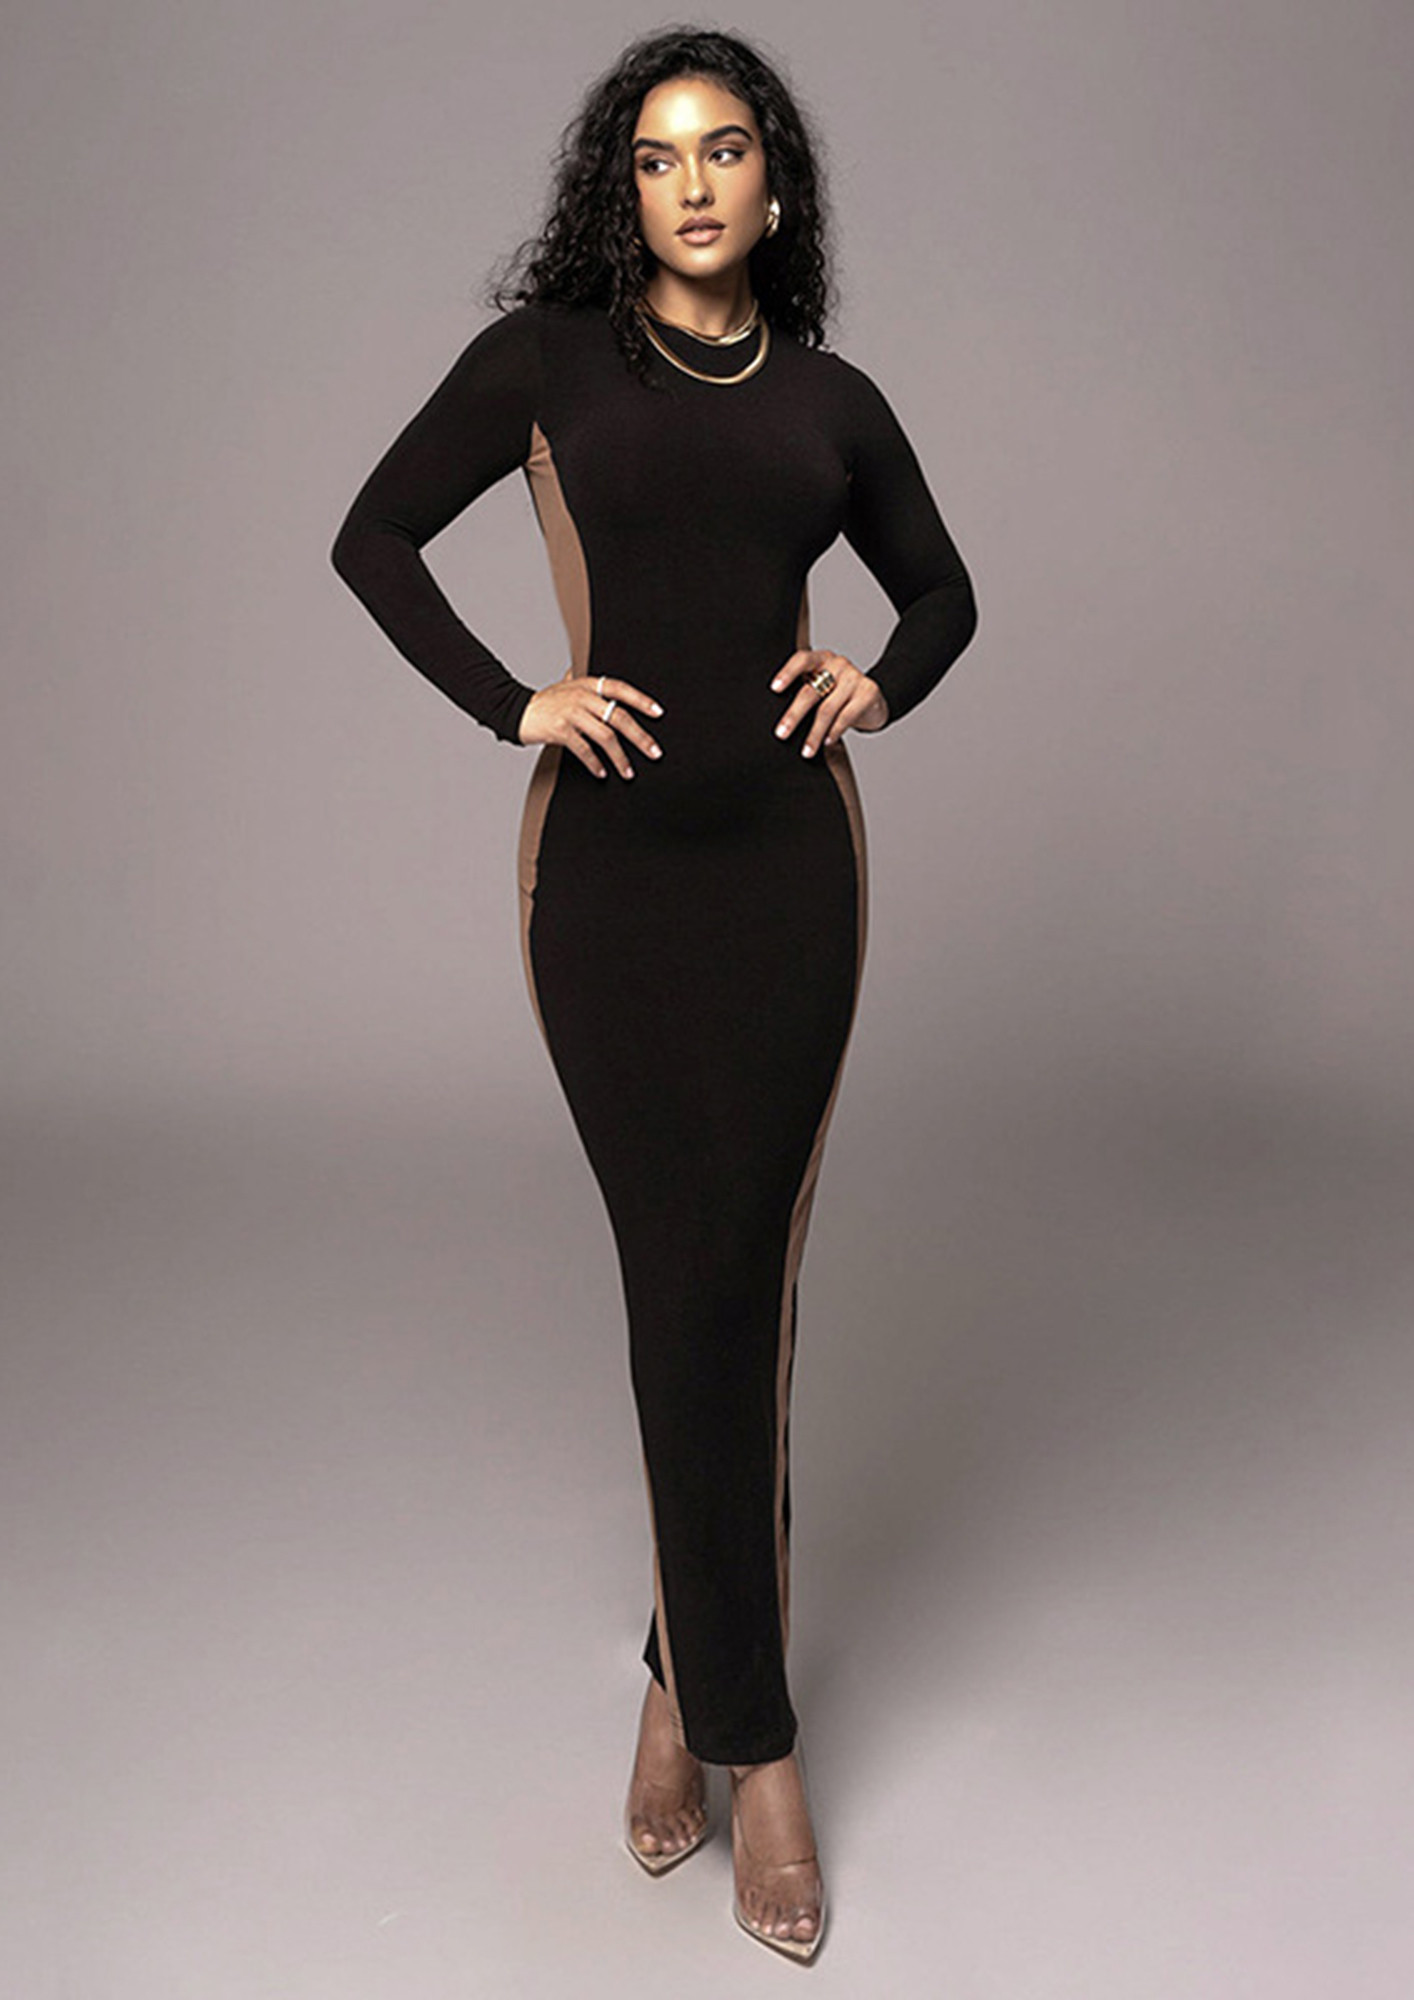 Women's Full Sleeves Black Bodycon Dress